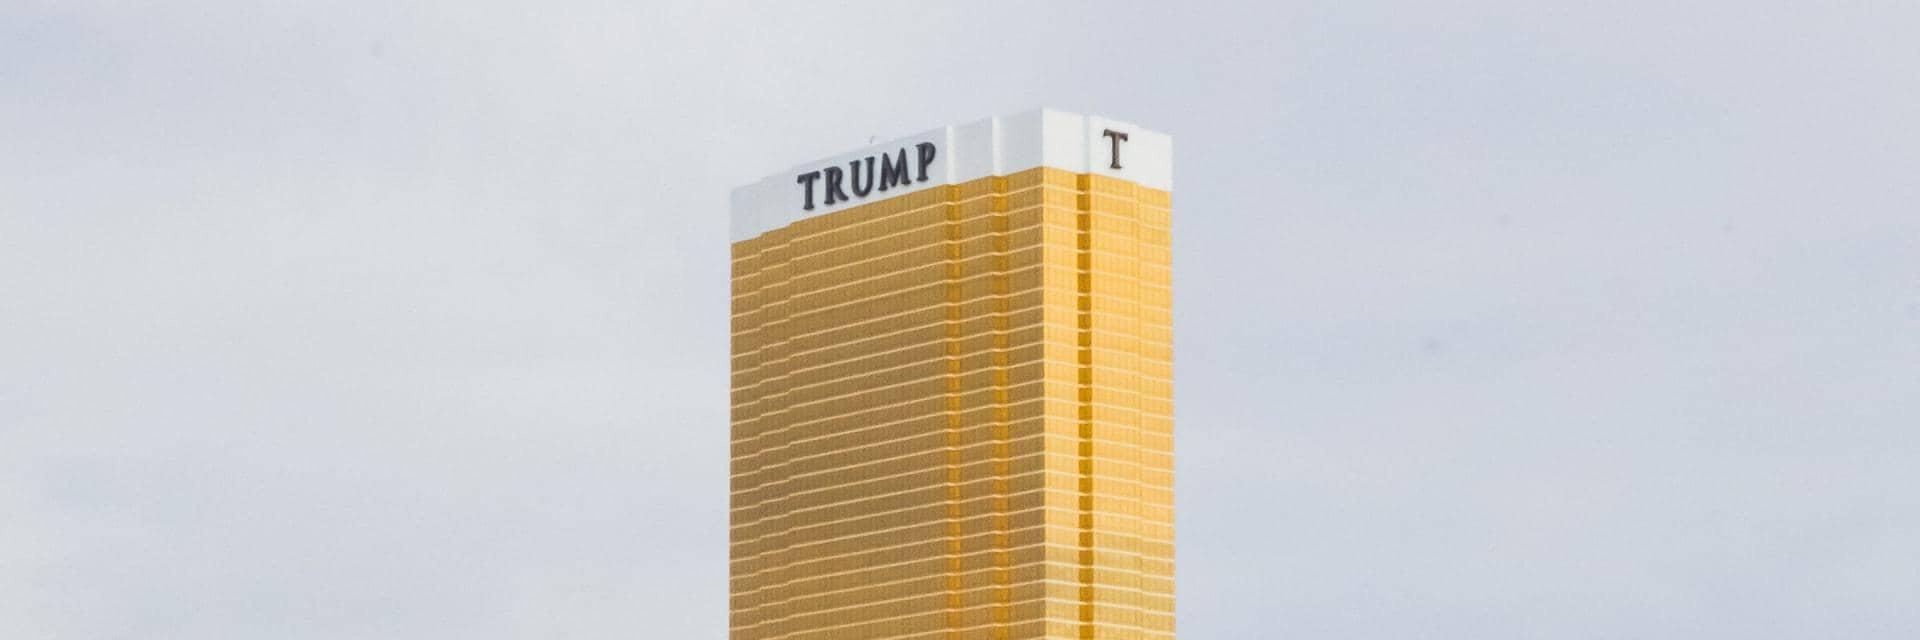 Trump tower, Las Vegas